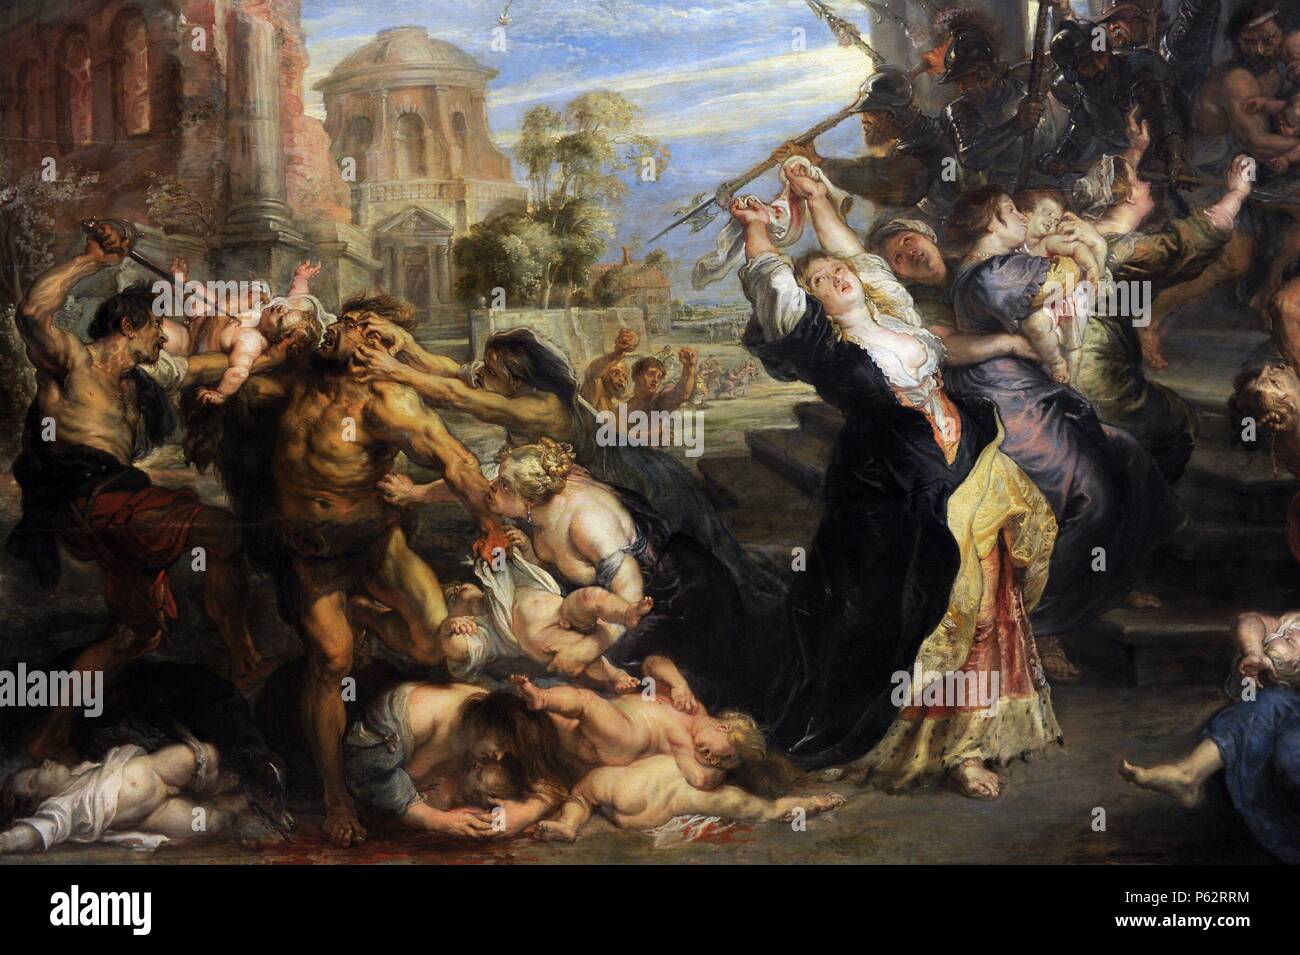 despensa Permiso Melbourne Peter Paul Rubens (1577-1640). Nacida en Alemania, pintor barroco flamenco.  La matanza de los inocentes, 1635-40. Versión Pinakothek. Detalle. Munich.  Alemania Fotografía de stock - Alamy